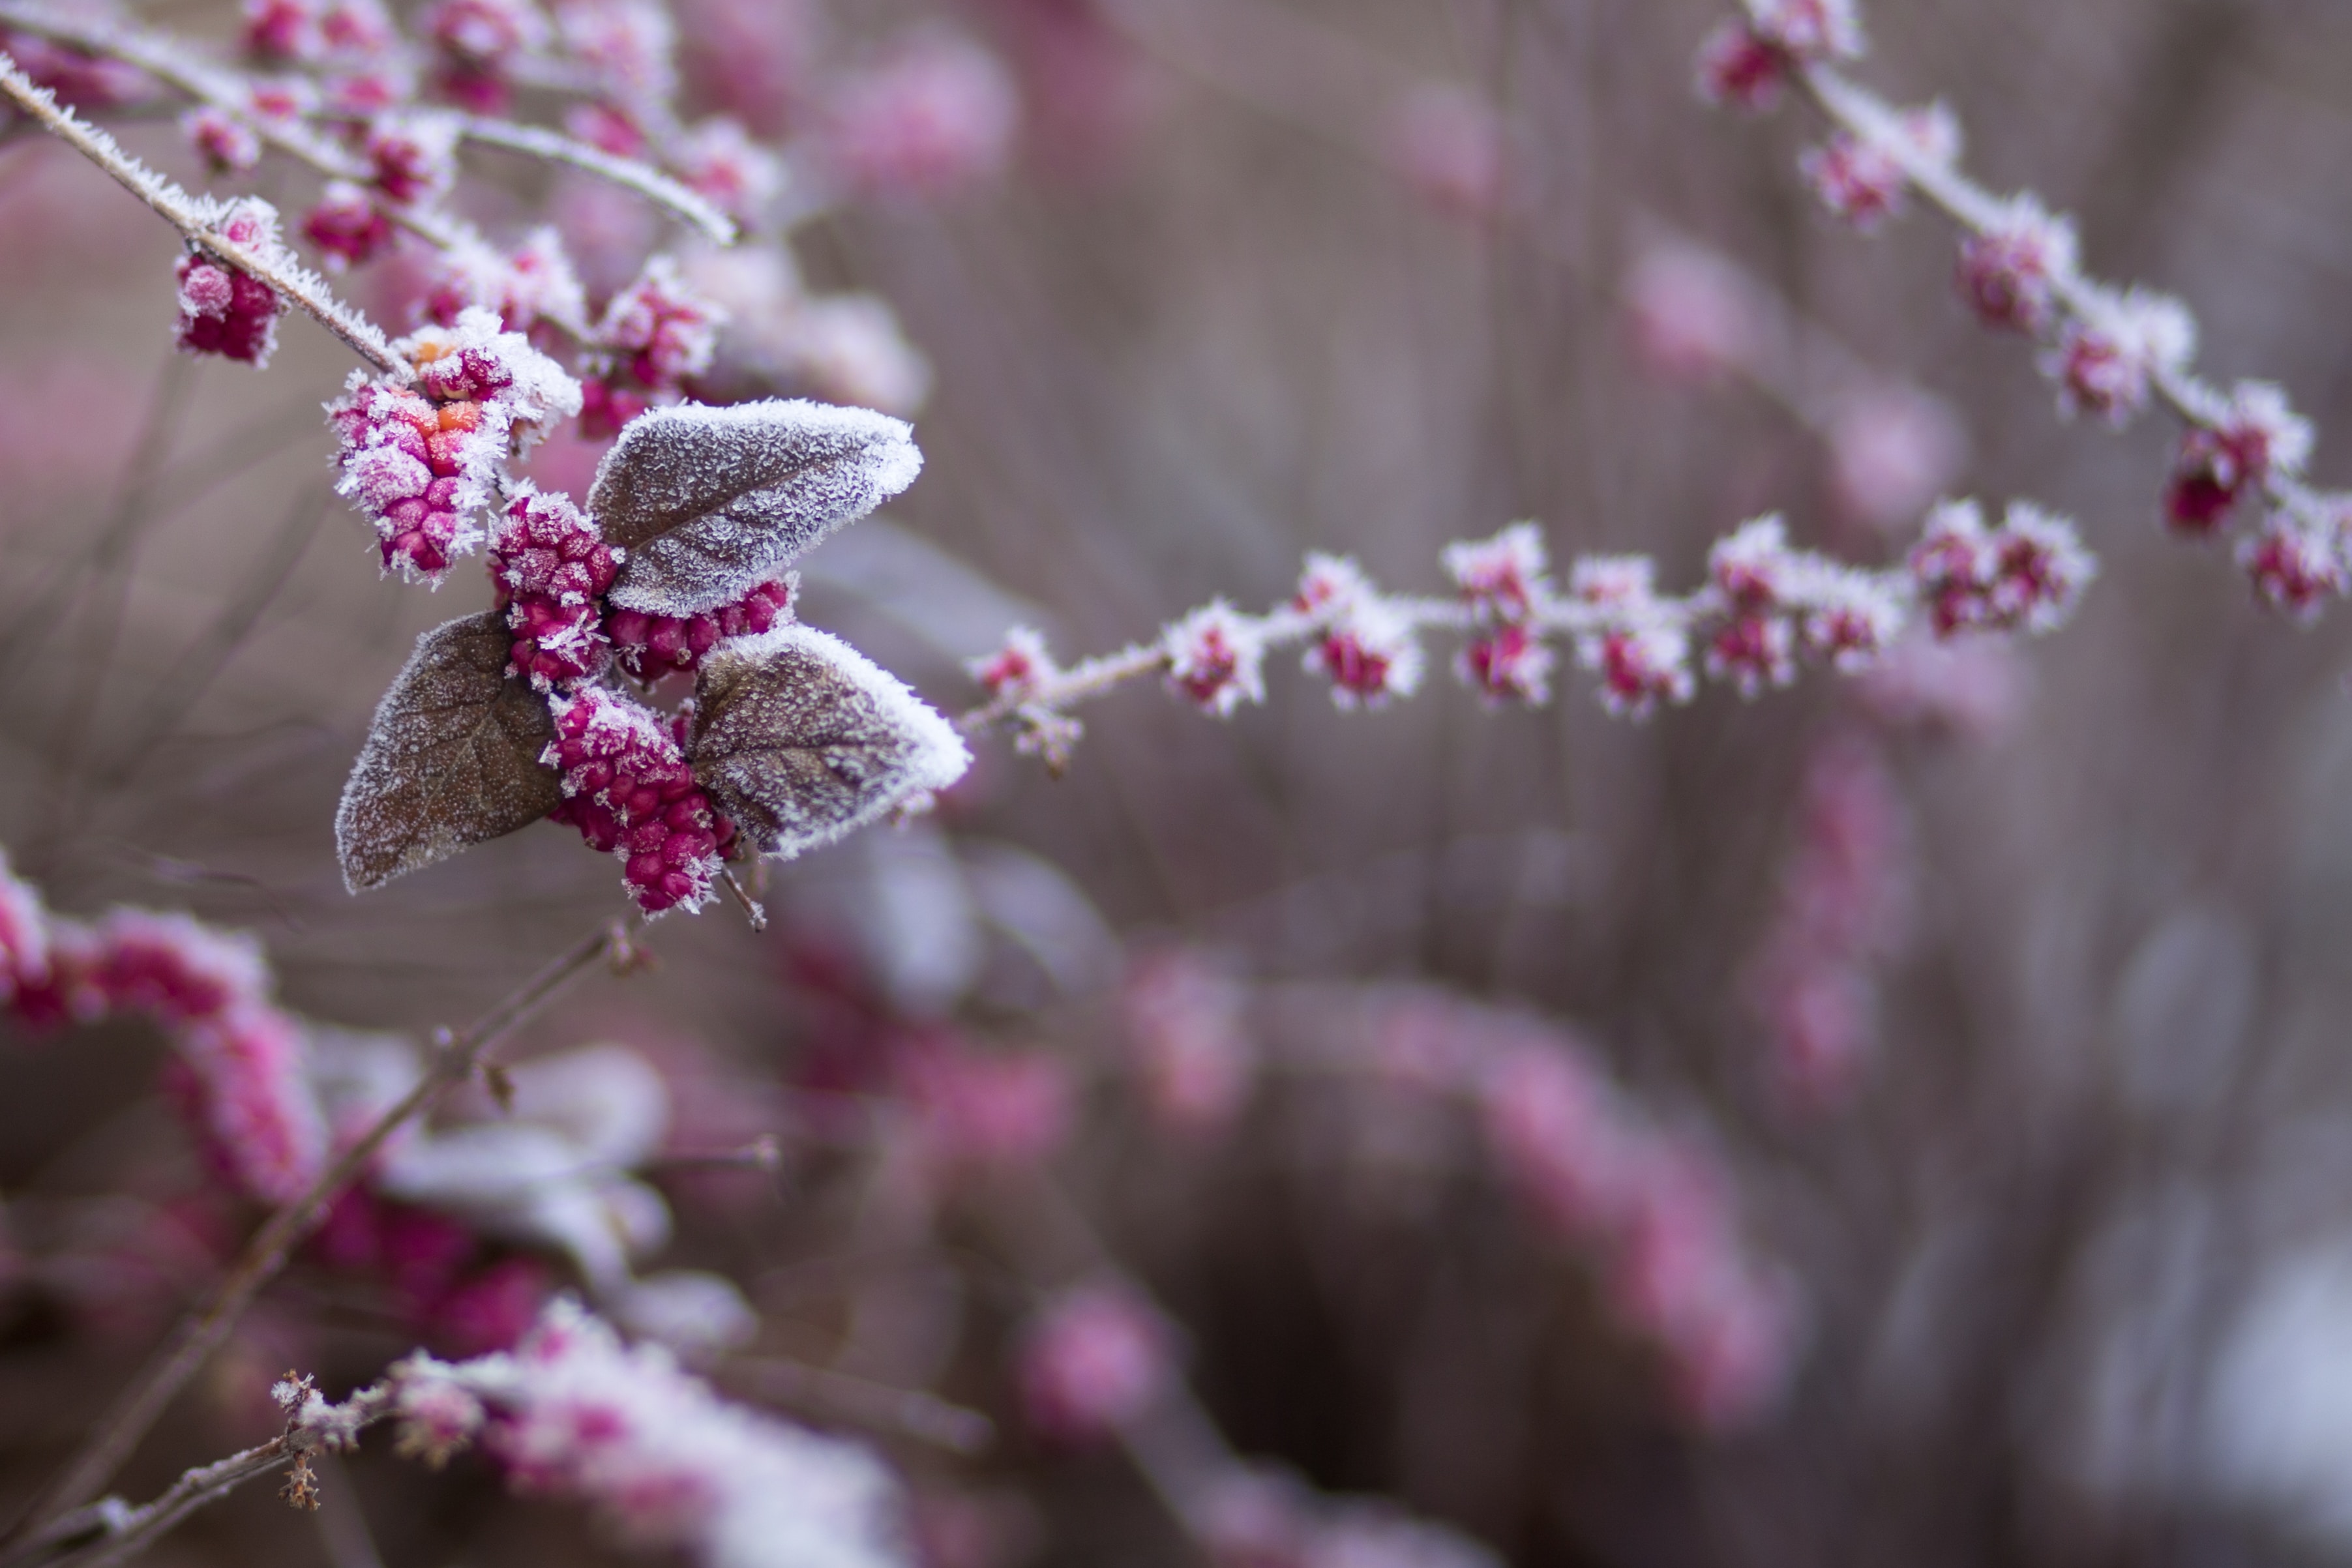 Veszélybe került a tavasz a fagy miatt: letarolja a kerteket a hideg - Blikk